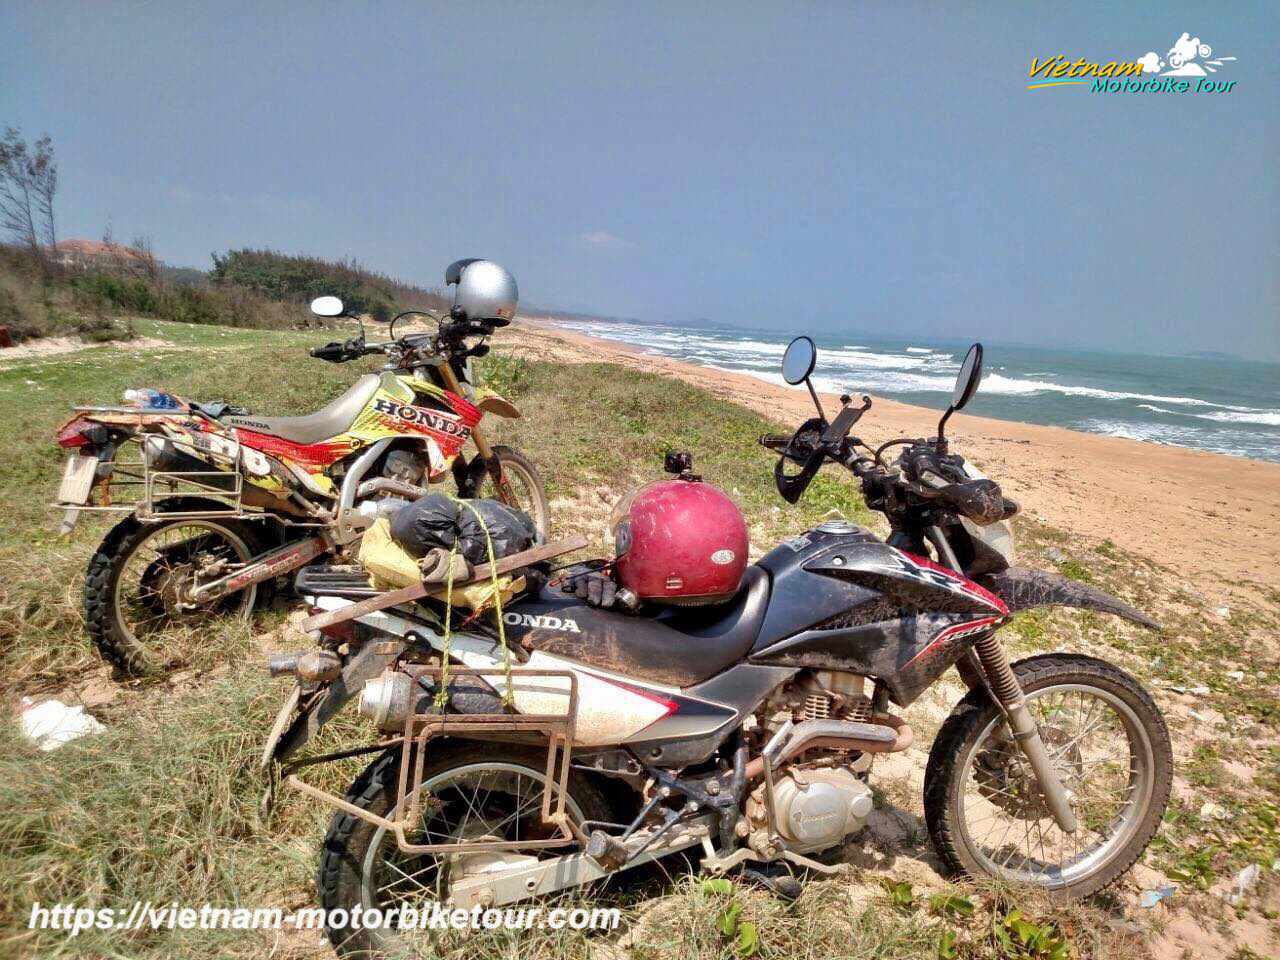 Lak lake motorcycle tour to Nha Trang